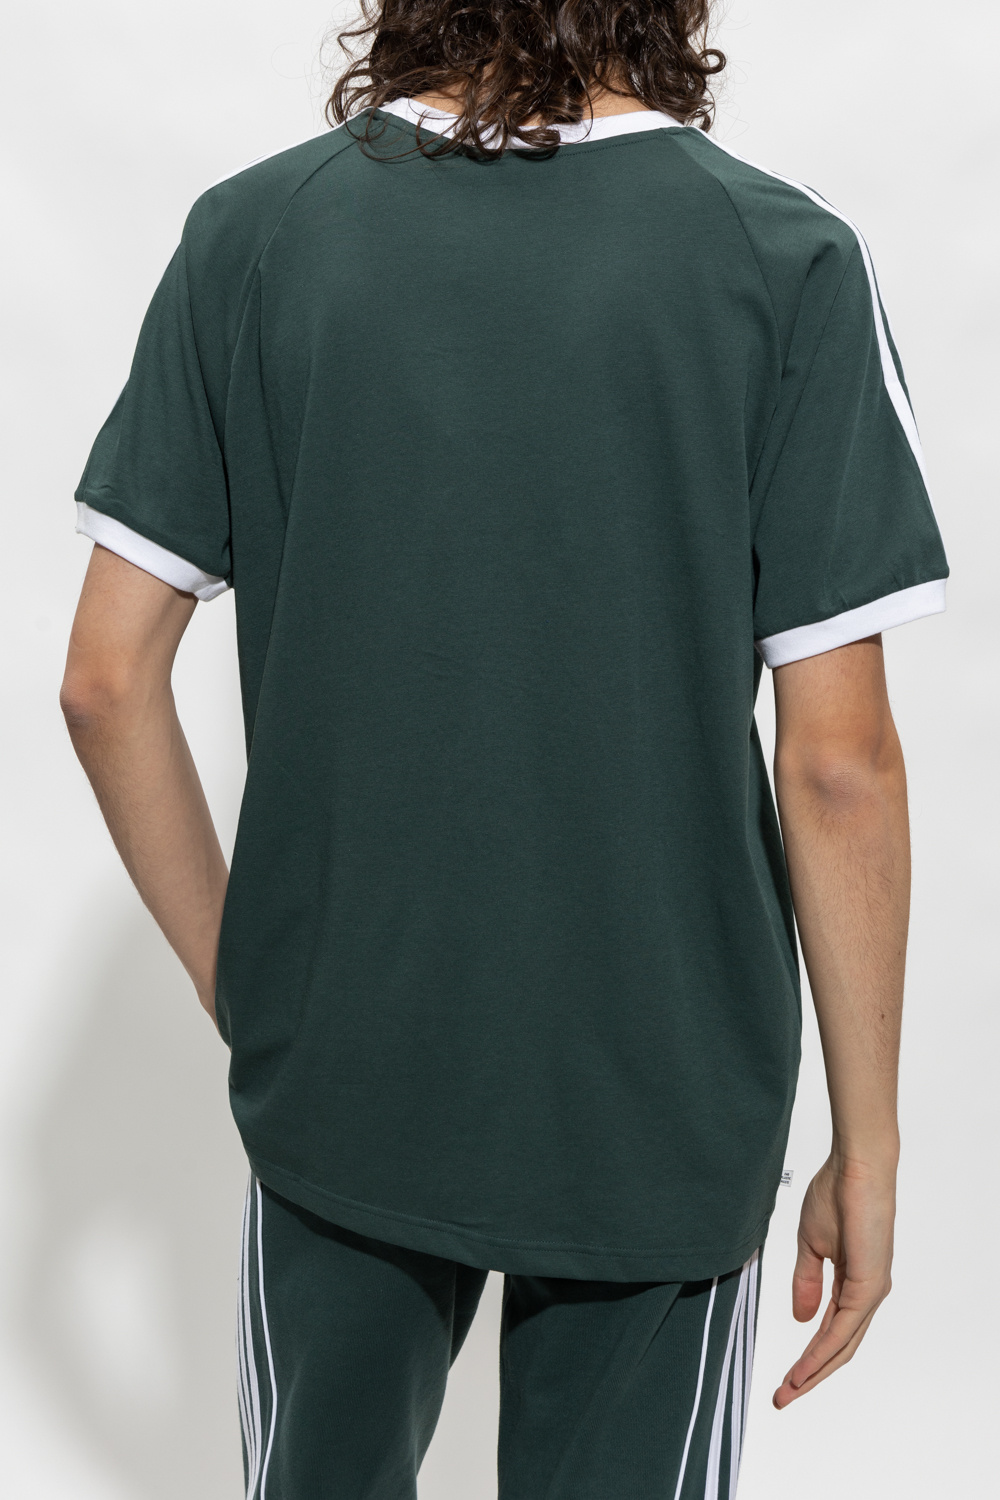 shirt GB Originals underlag ADIDAS Blå IetpShops - løbeshorts Green med adidas logo - T - with